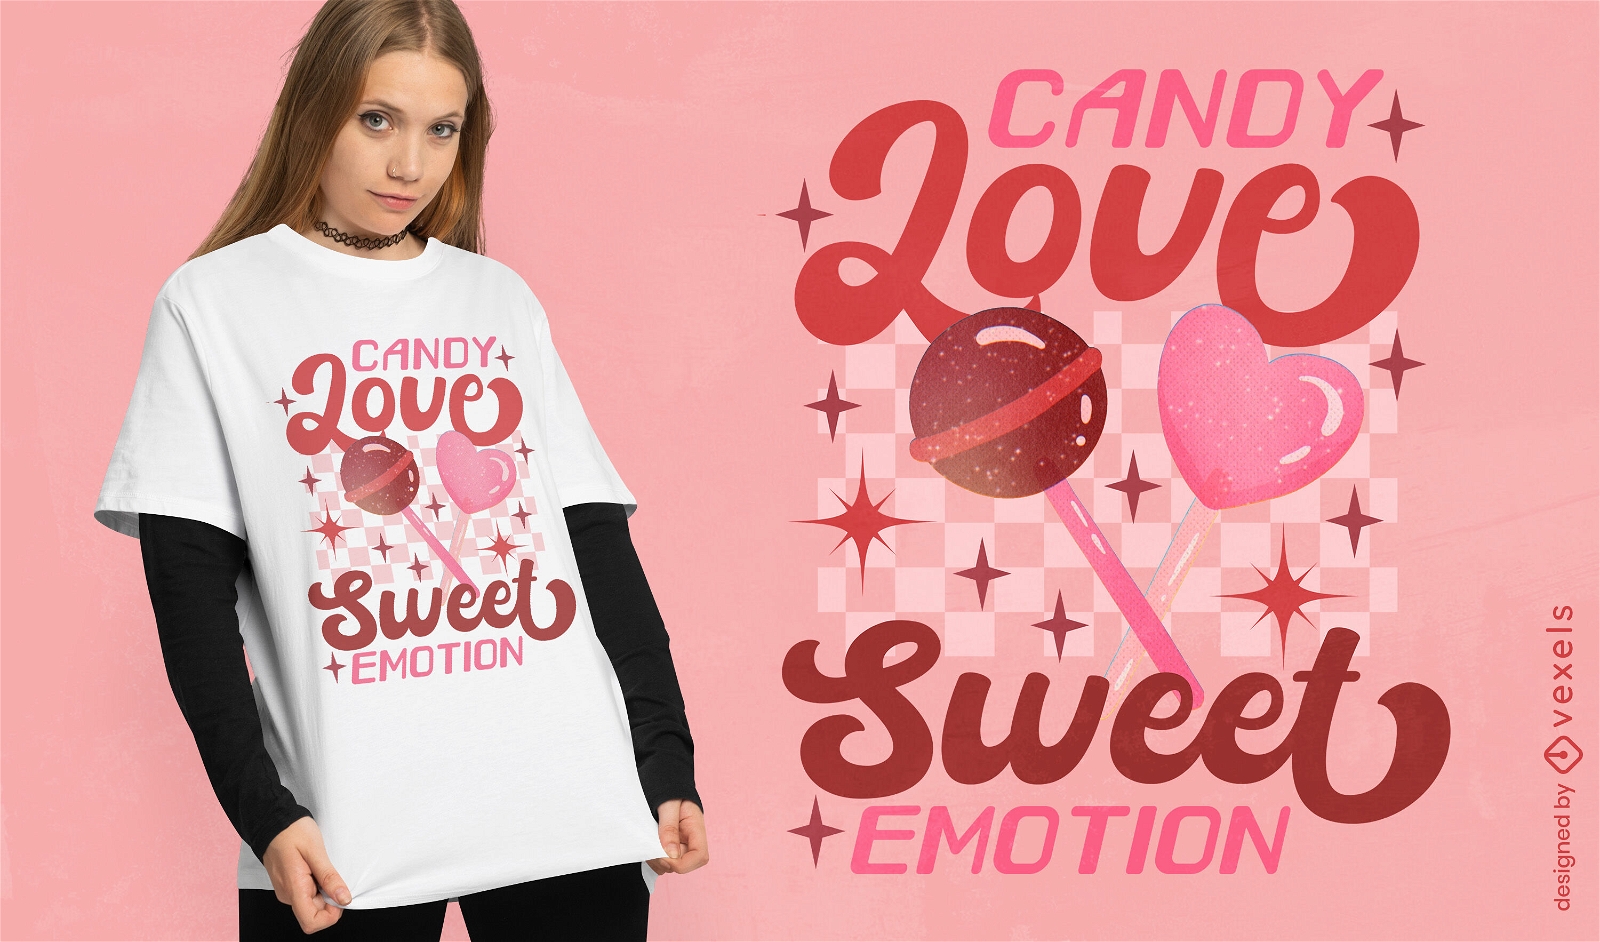 Candy love t-shirt design